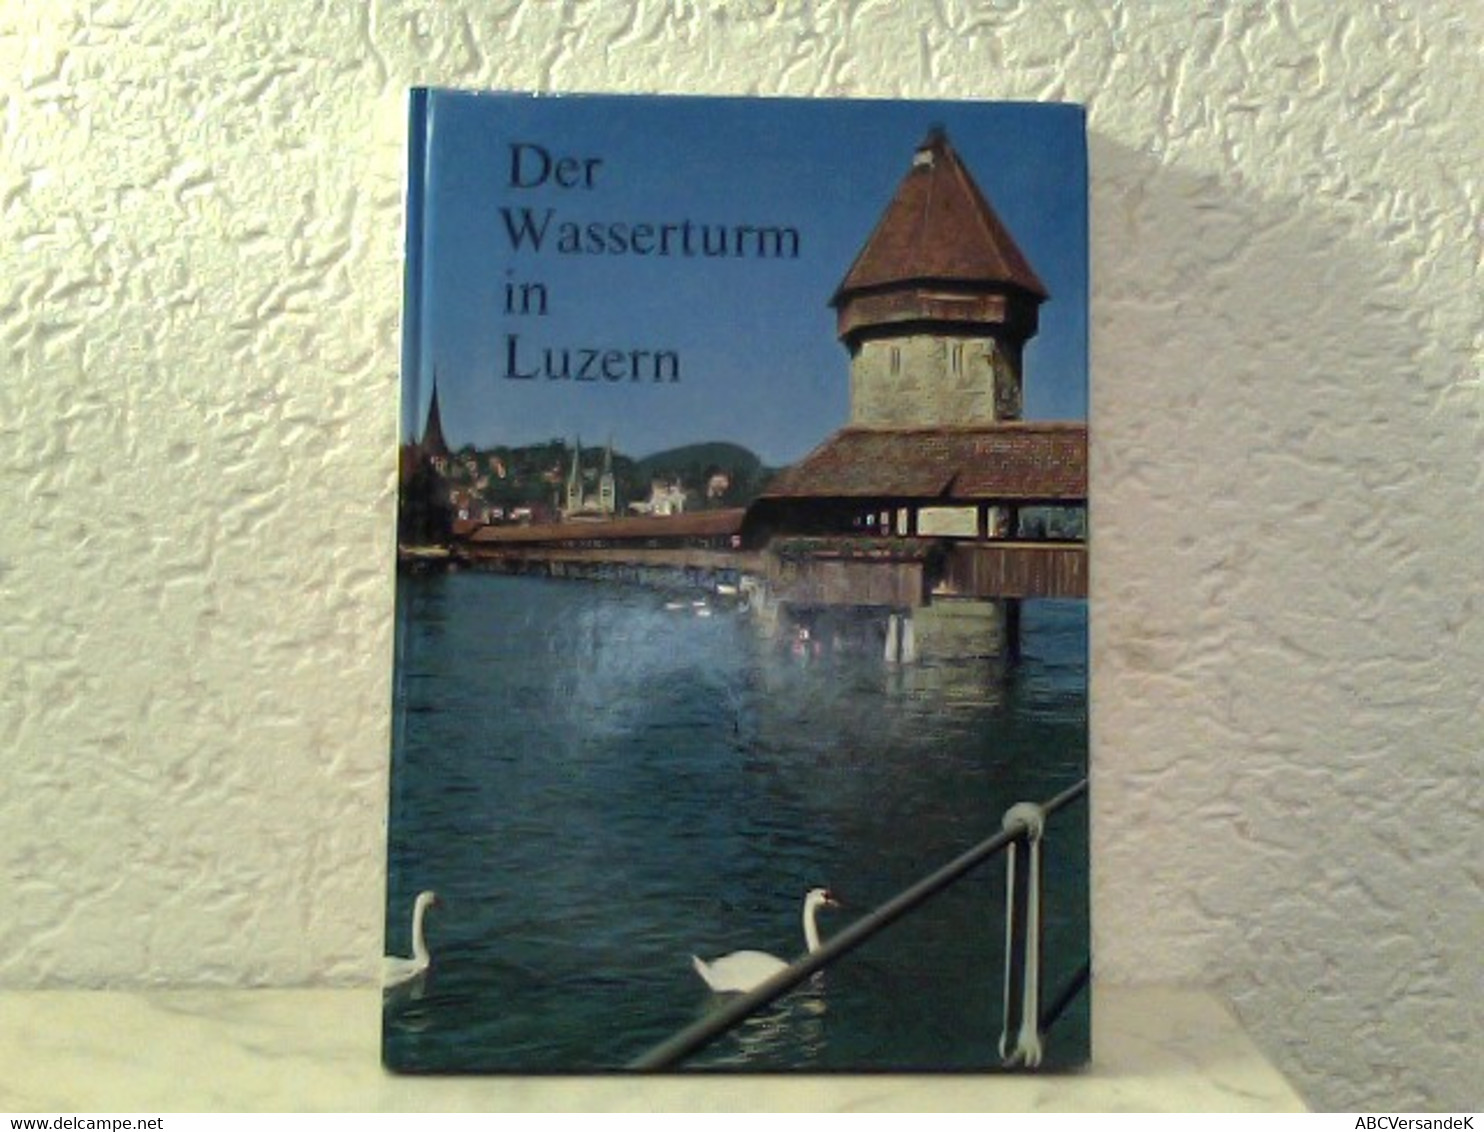 Der Wasserturm In Luzern - Herausgegeben Als Beitrag Zur 800 - Jahr - Feier Der Stadt Luzern - Zwitserland